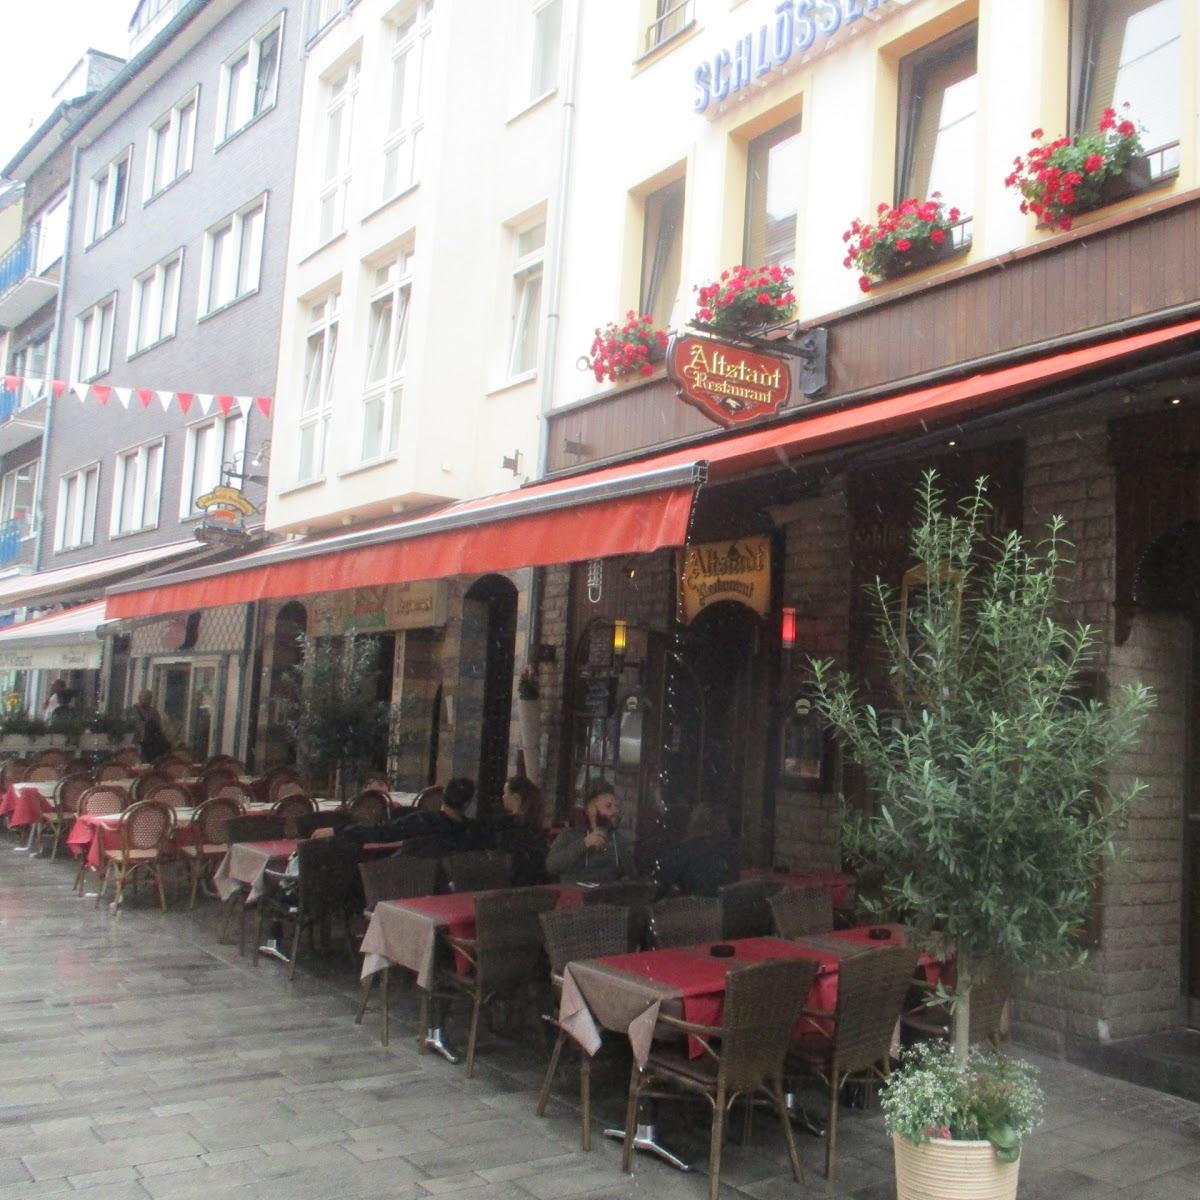 Restaurant "Altstadt Restaurant" in  Düsseldorf